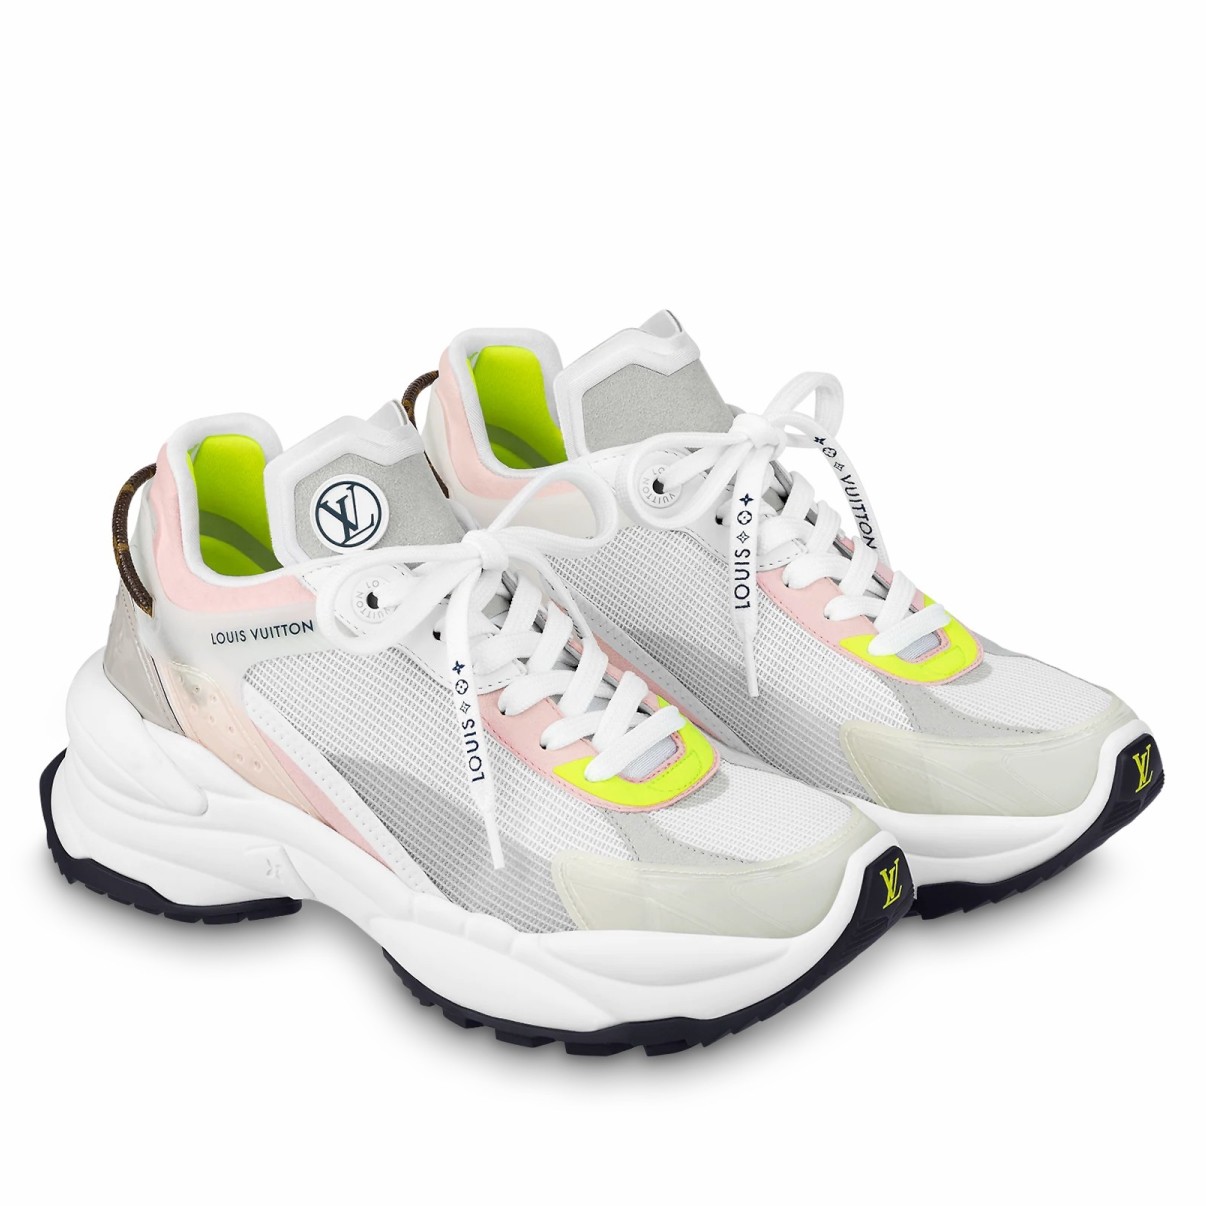 Louis Vuitton - Boombox Sneaker Boot Sneakers - Size: Shoes / EU 36 -  Catawiki